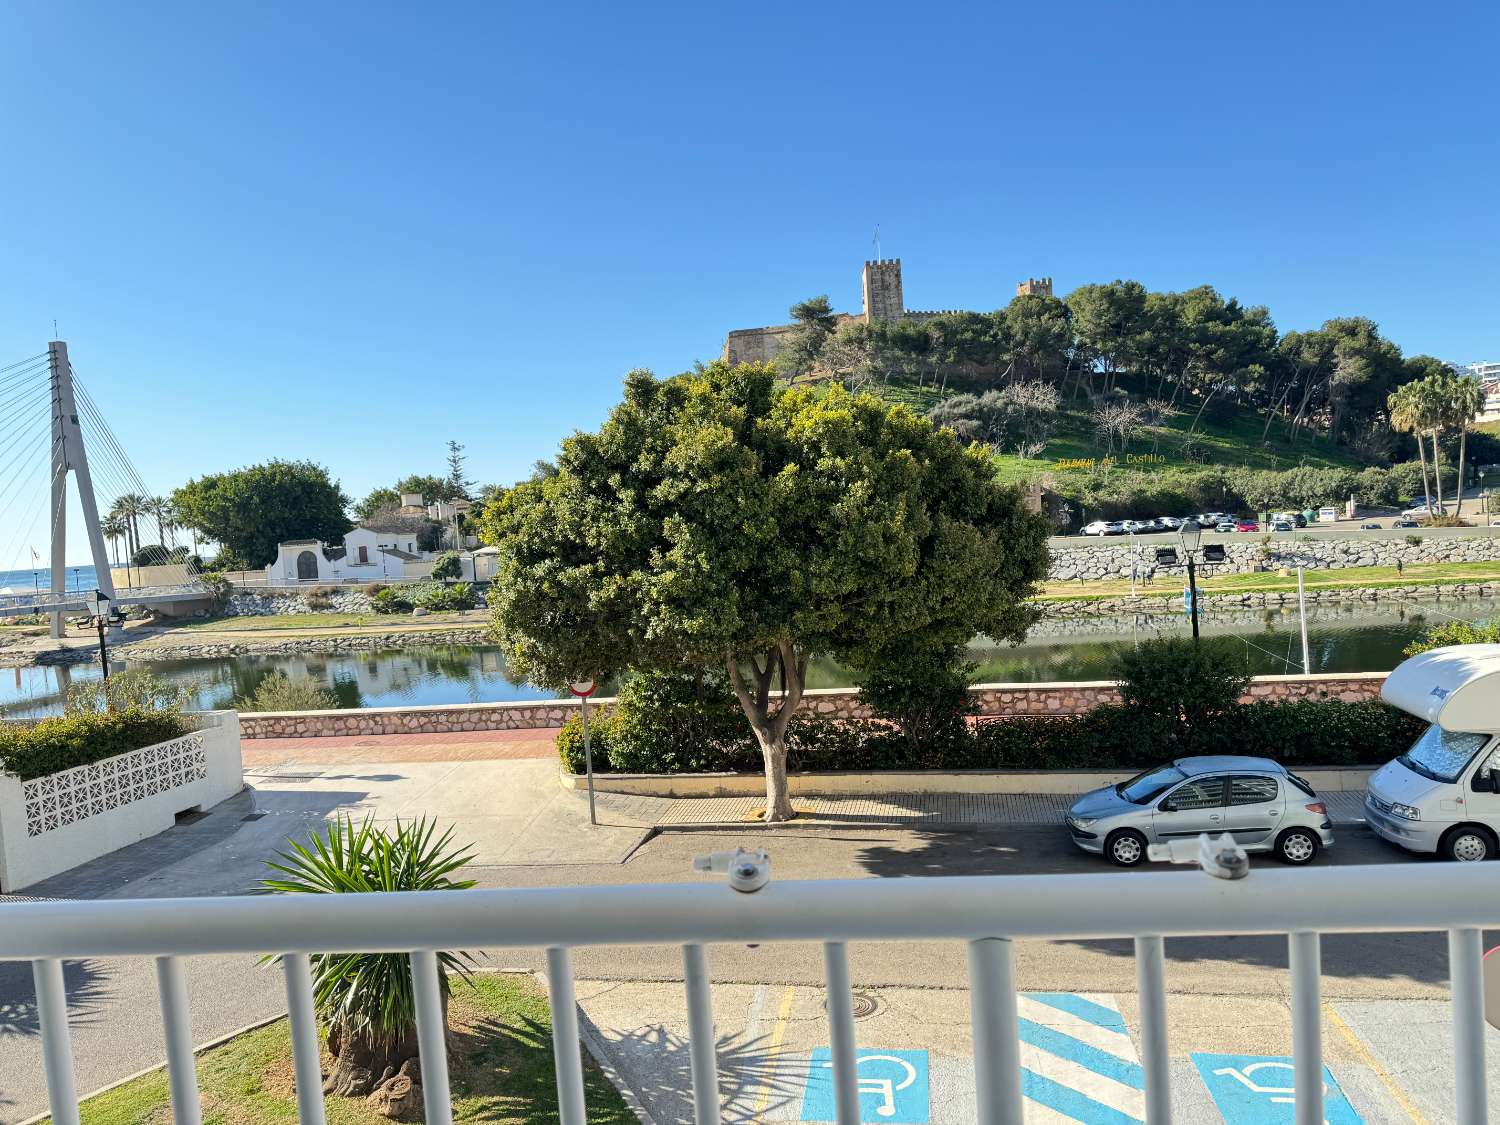 "Refugio costero en Fuengirola: experimente la belleza mediterránea desde nuestra terraza junto al mar"